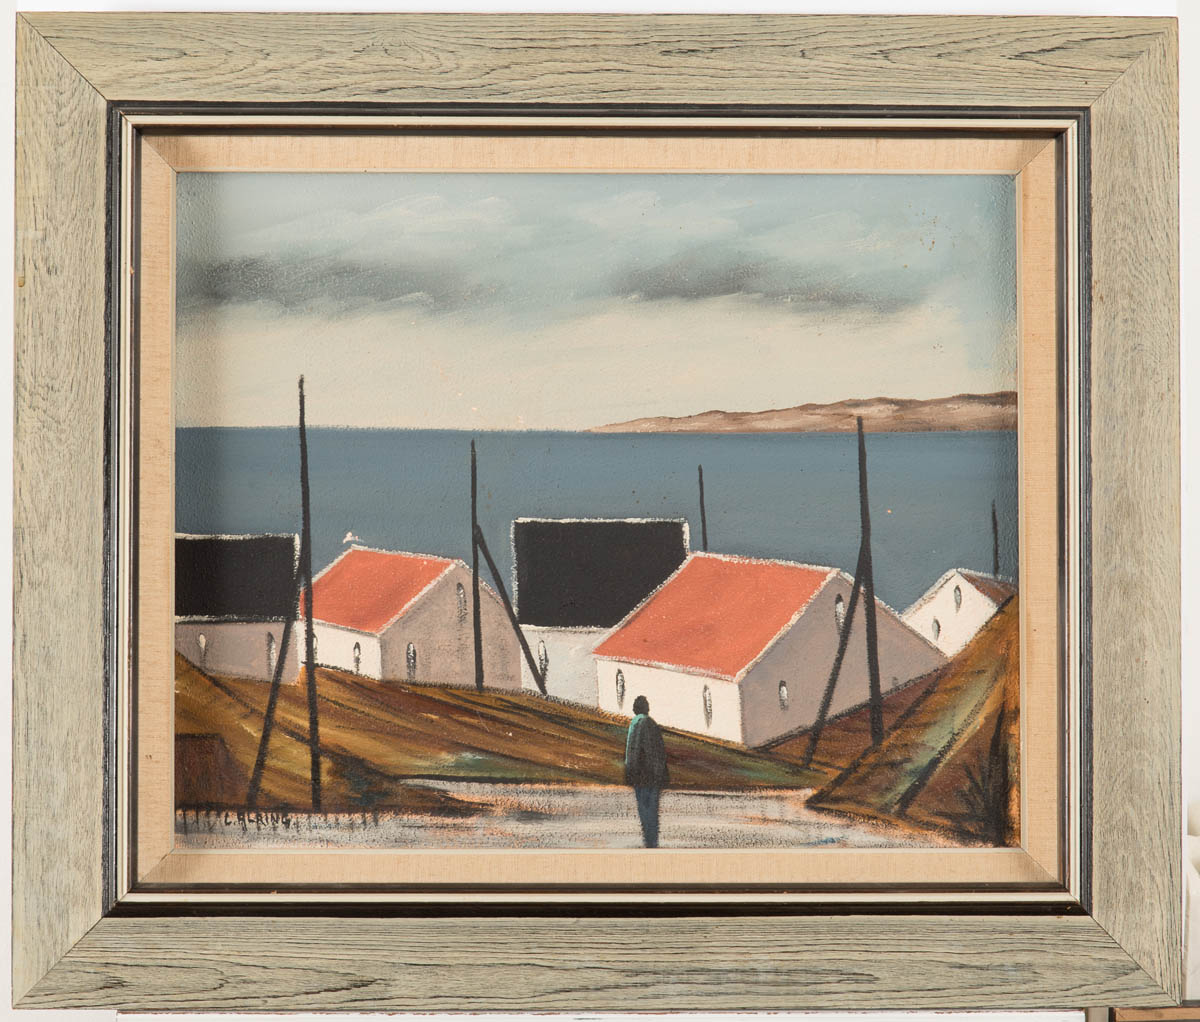 Alring, L. Dänischer Maler, Neue Sachlichkeit. "Häuser am Meer", Öl/Lwd. 42 x 49 cm, R.